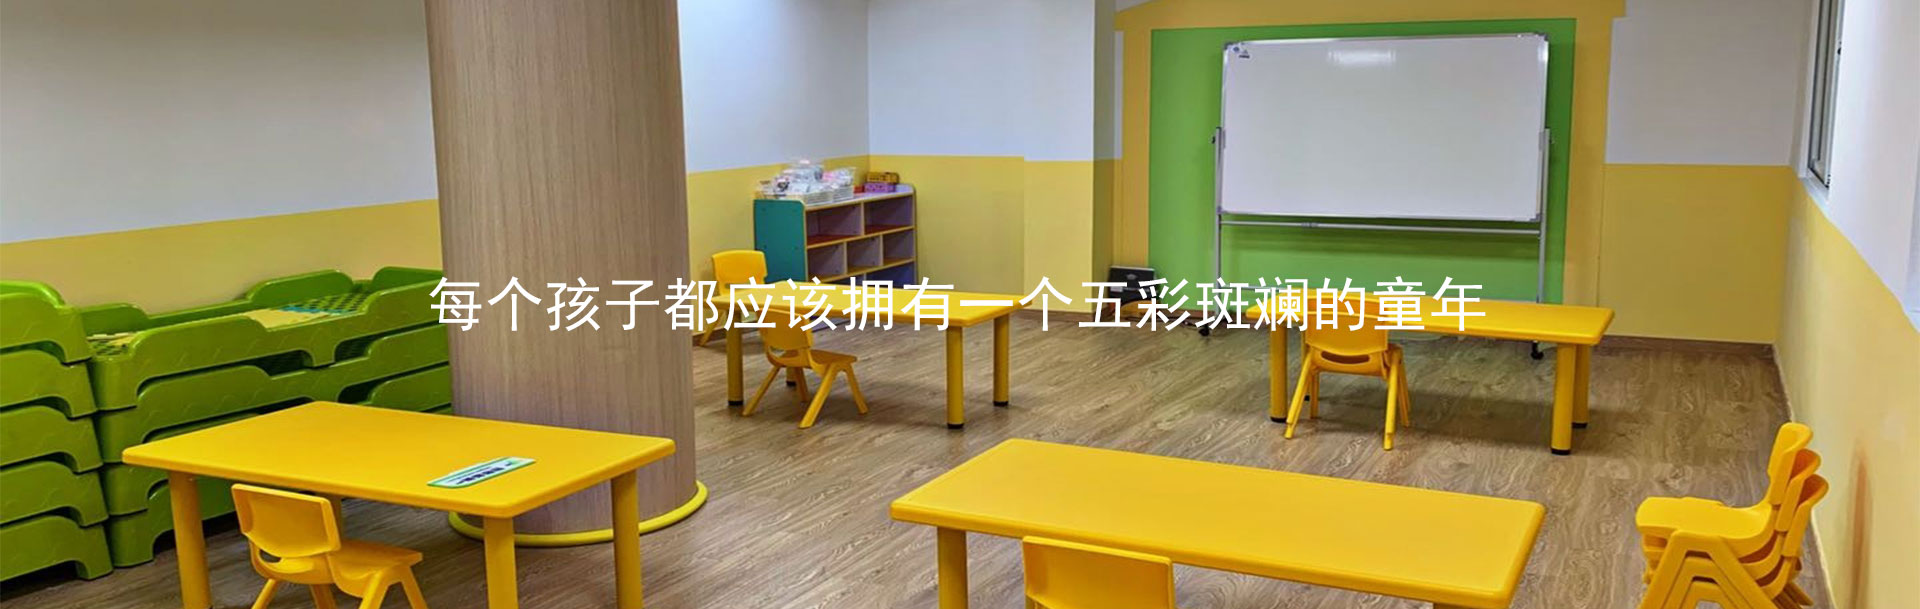 心爱星(南京)儿童康复中心